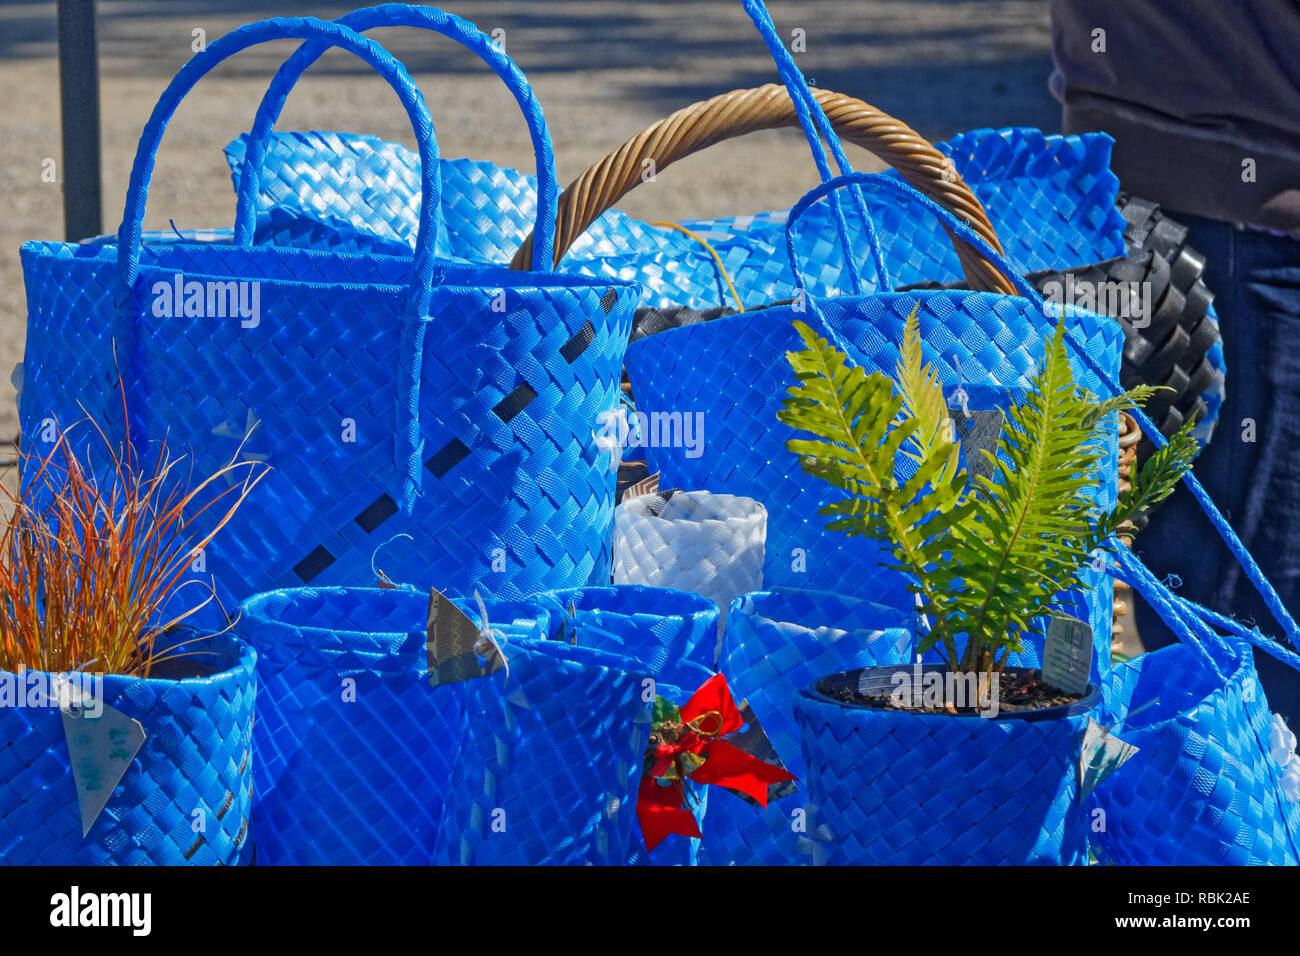 Blaue Einkaufstaschen, Warenkörbe, und Blumentopf Inhaber von upcycled Verpackungen Armband Materialien auf einem Marktstand Stockfoto